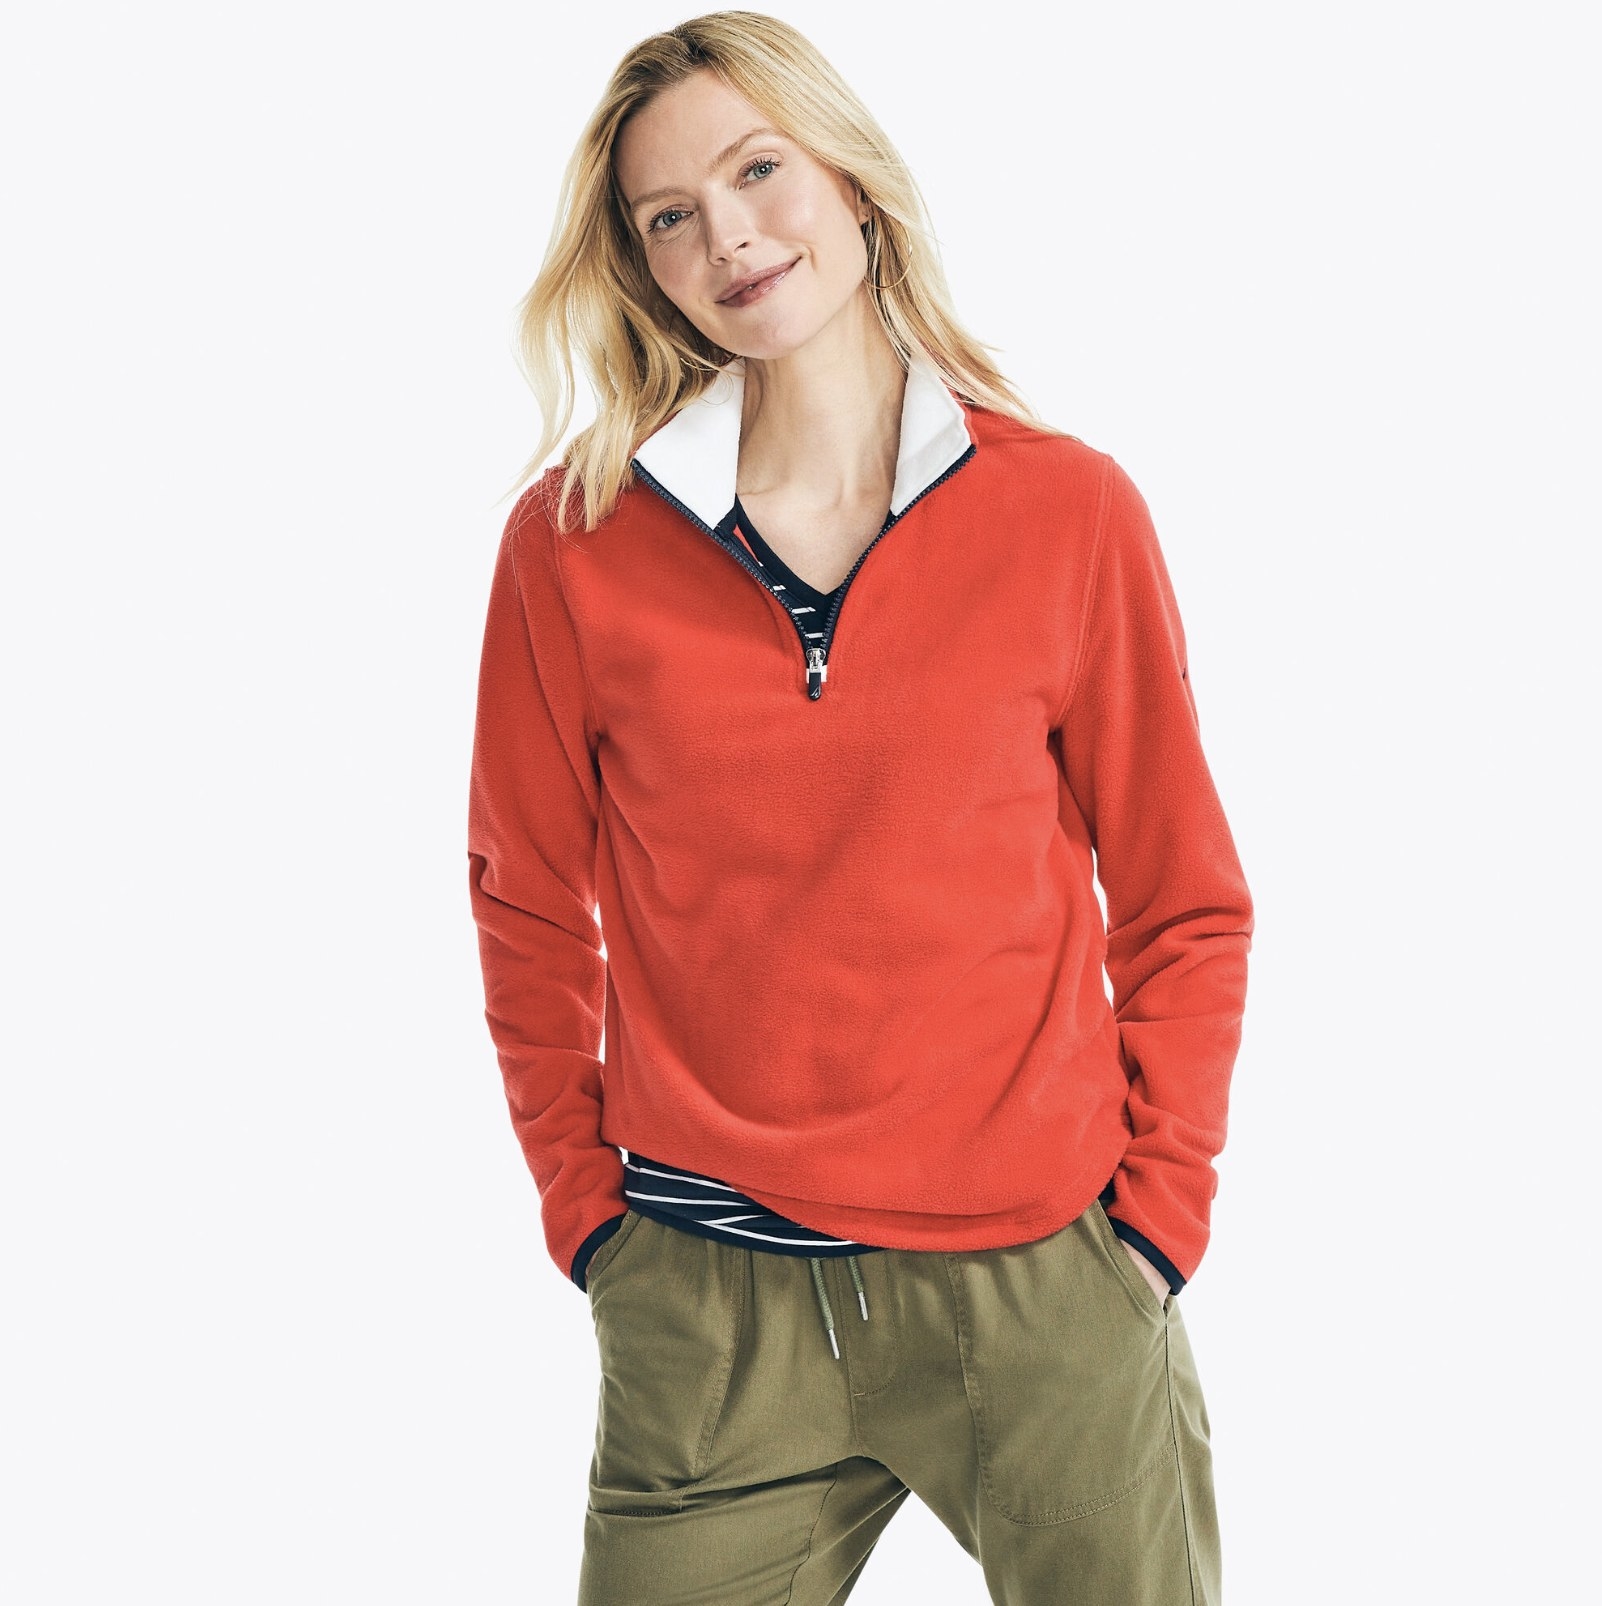 model wearing quarter-zip fleece in red